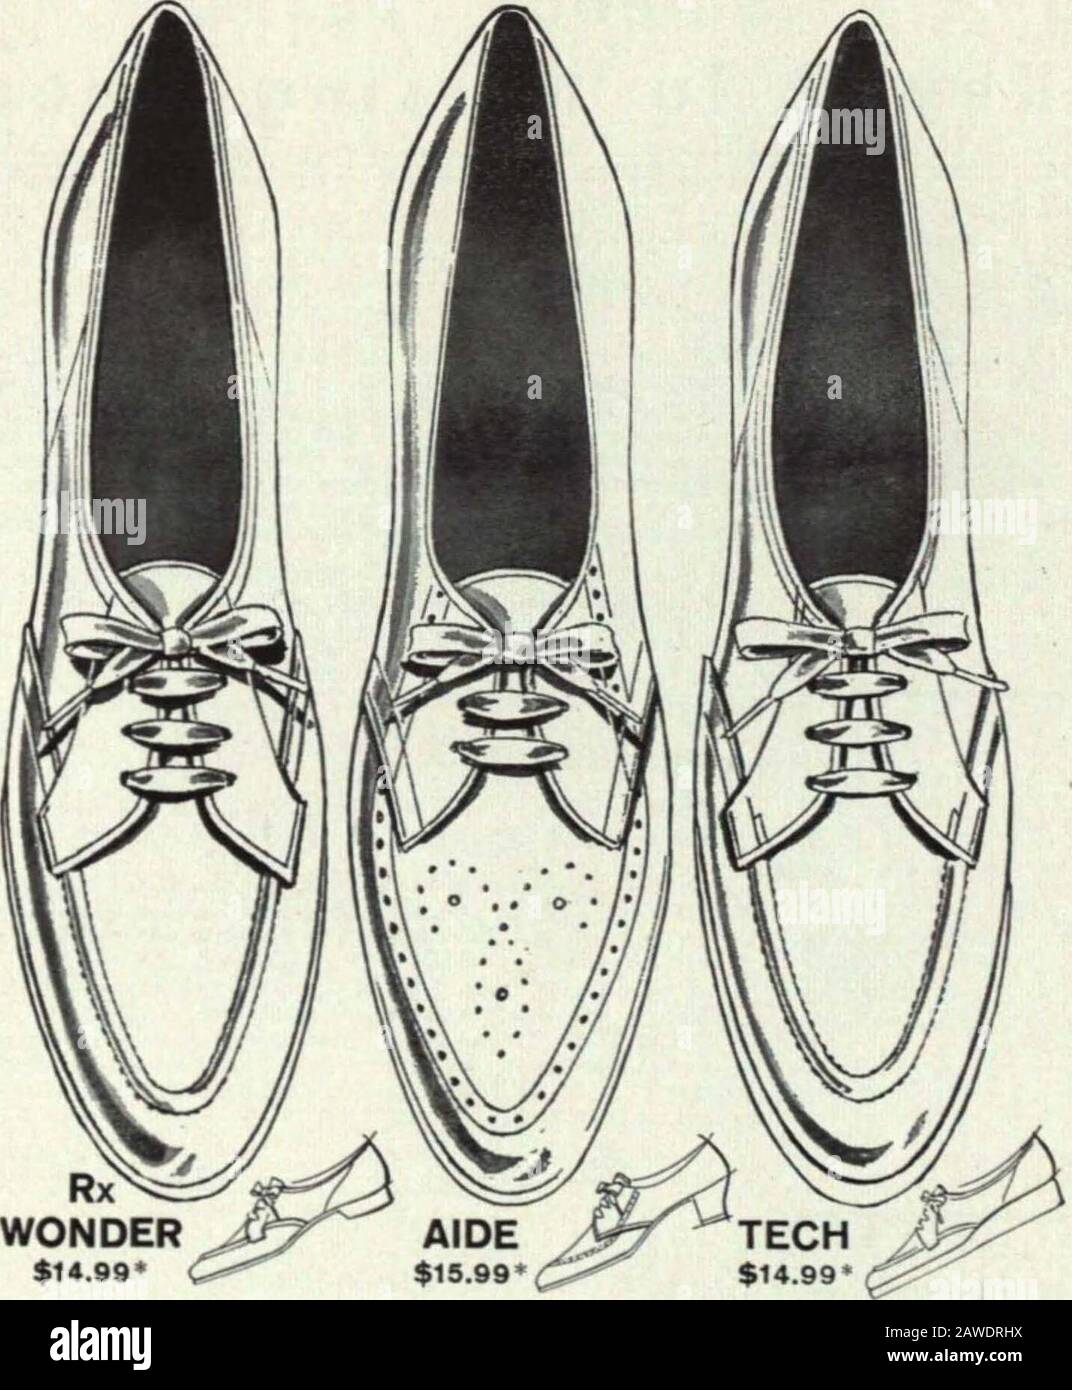 naturalizer nurse shoes